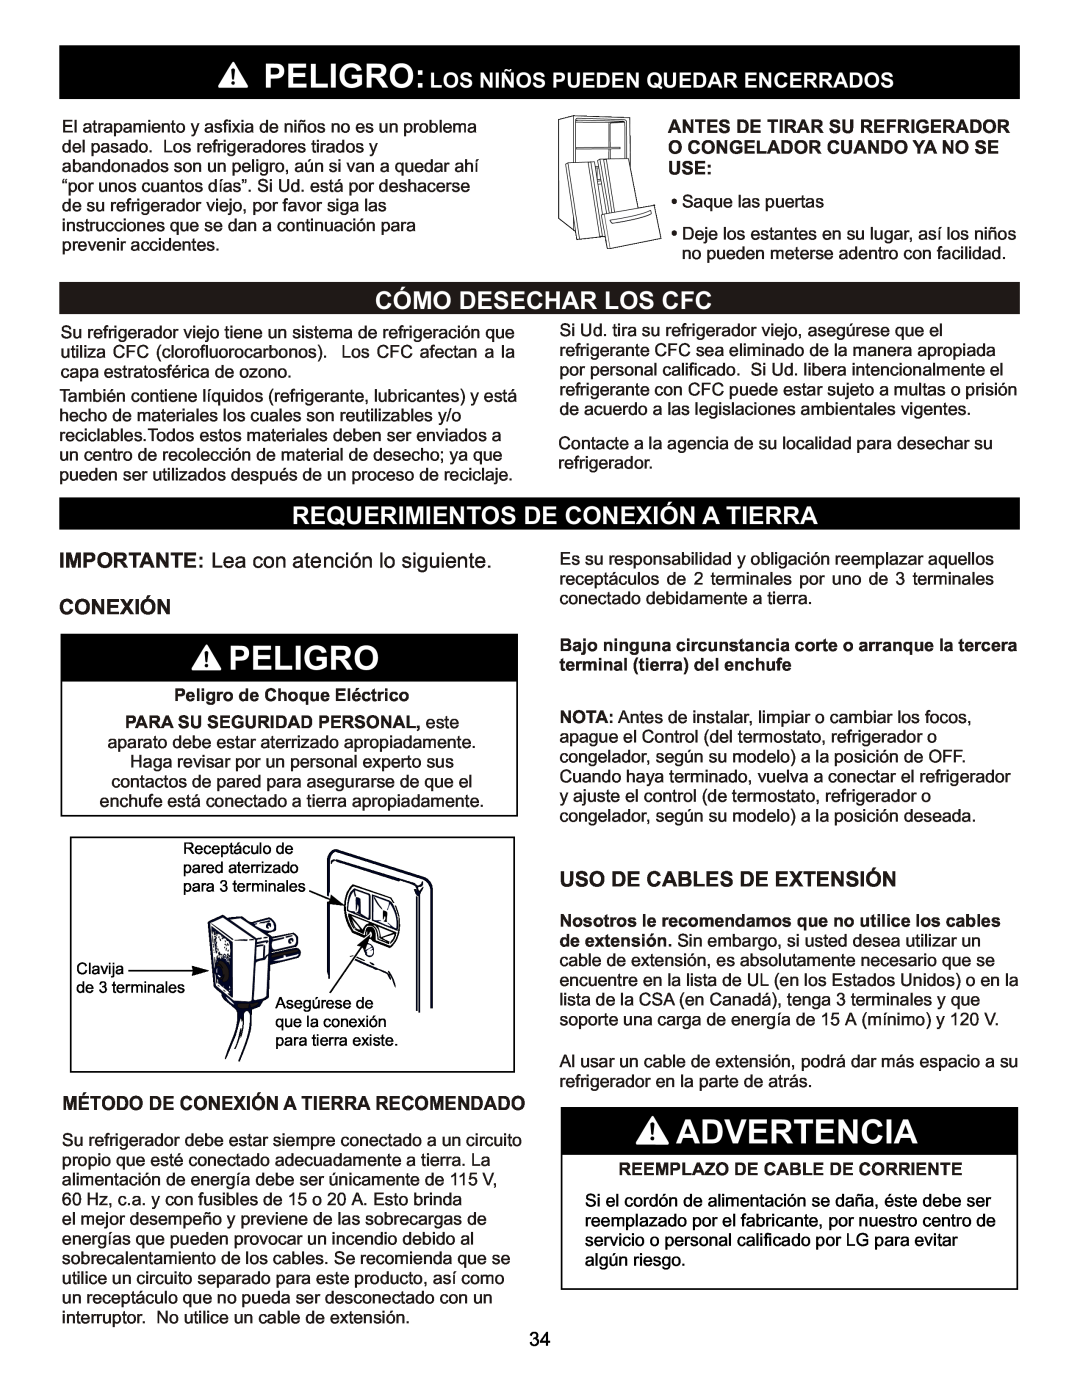 LG Electronics LFC23760 owner manual Peligro, Advertencia, Cómo Desechar Los Cfc, Requerimientos De Conexión A Tierra 